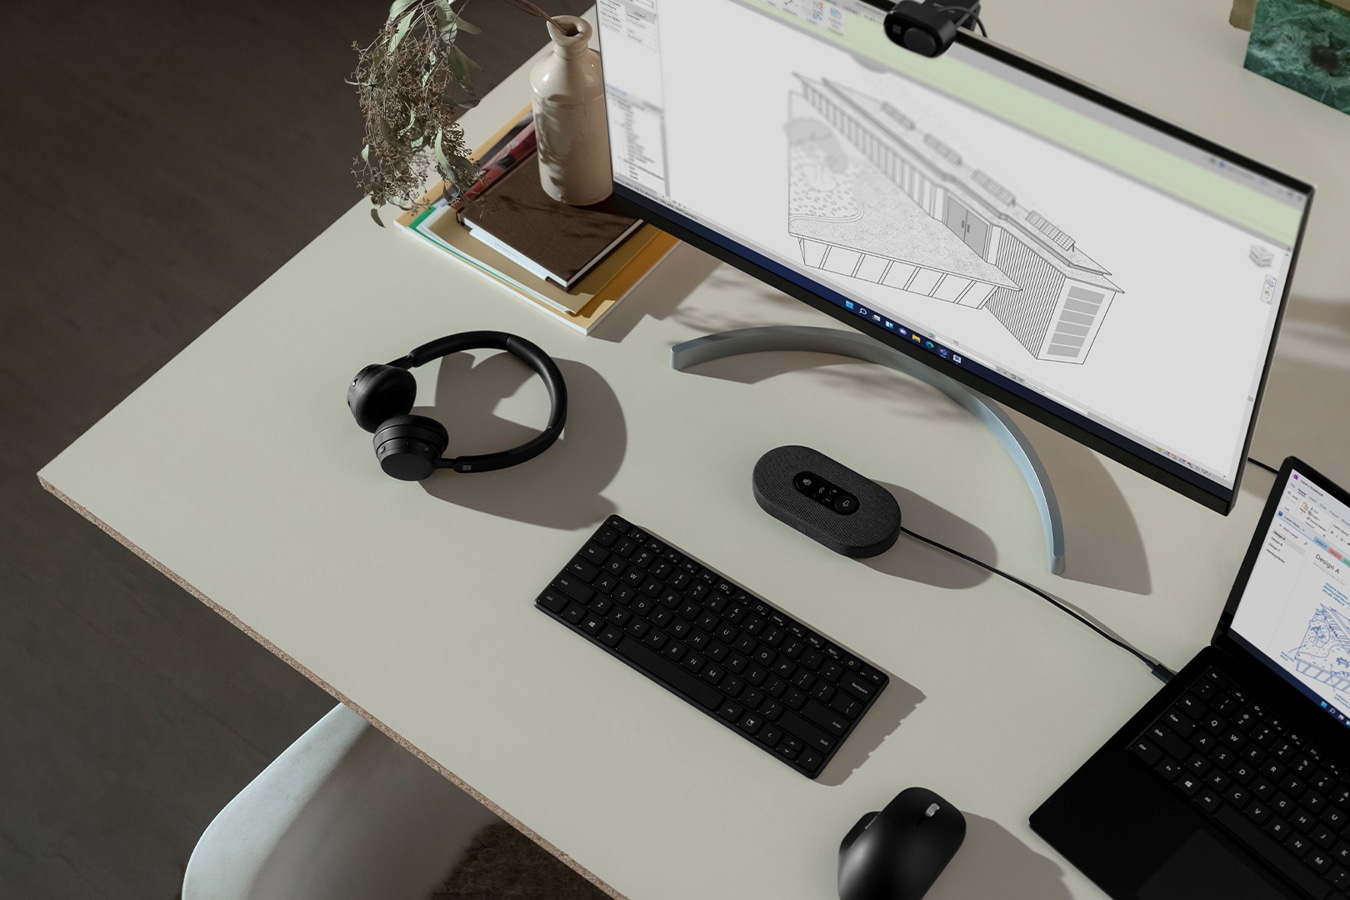 يظهر جهاز Surface موضوعًا على مكتب ومتصلاً بشاشة خارجية مع العديد من ملحقات Surface القريبة